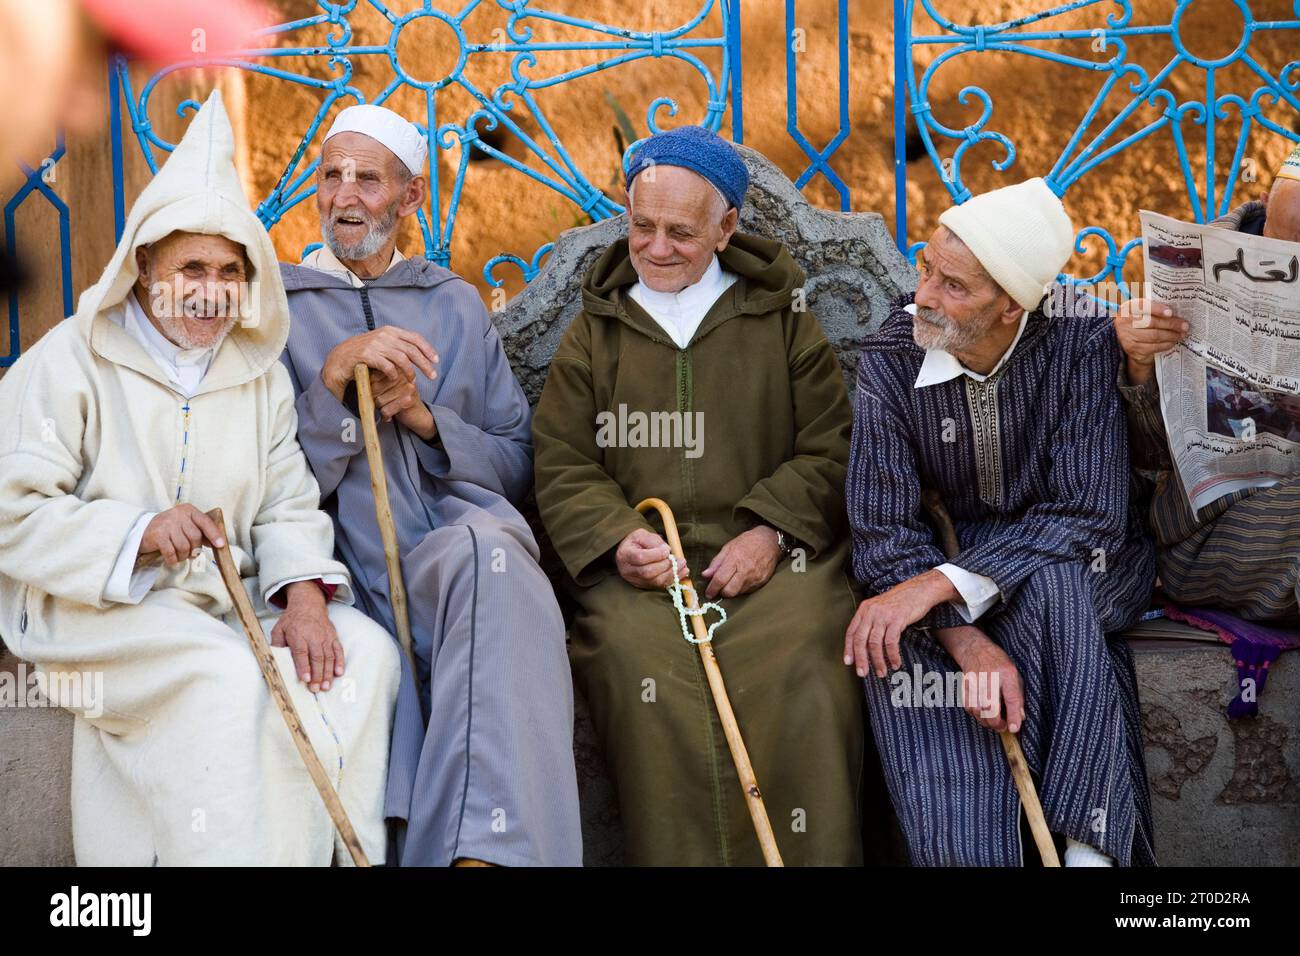 Des hommes âgés assis sur la place Plaza uta el hammam à Chefchaouen, région montagneuse du RIF, Maroc. Banque D'Images